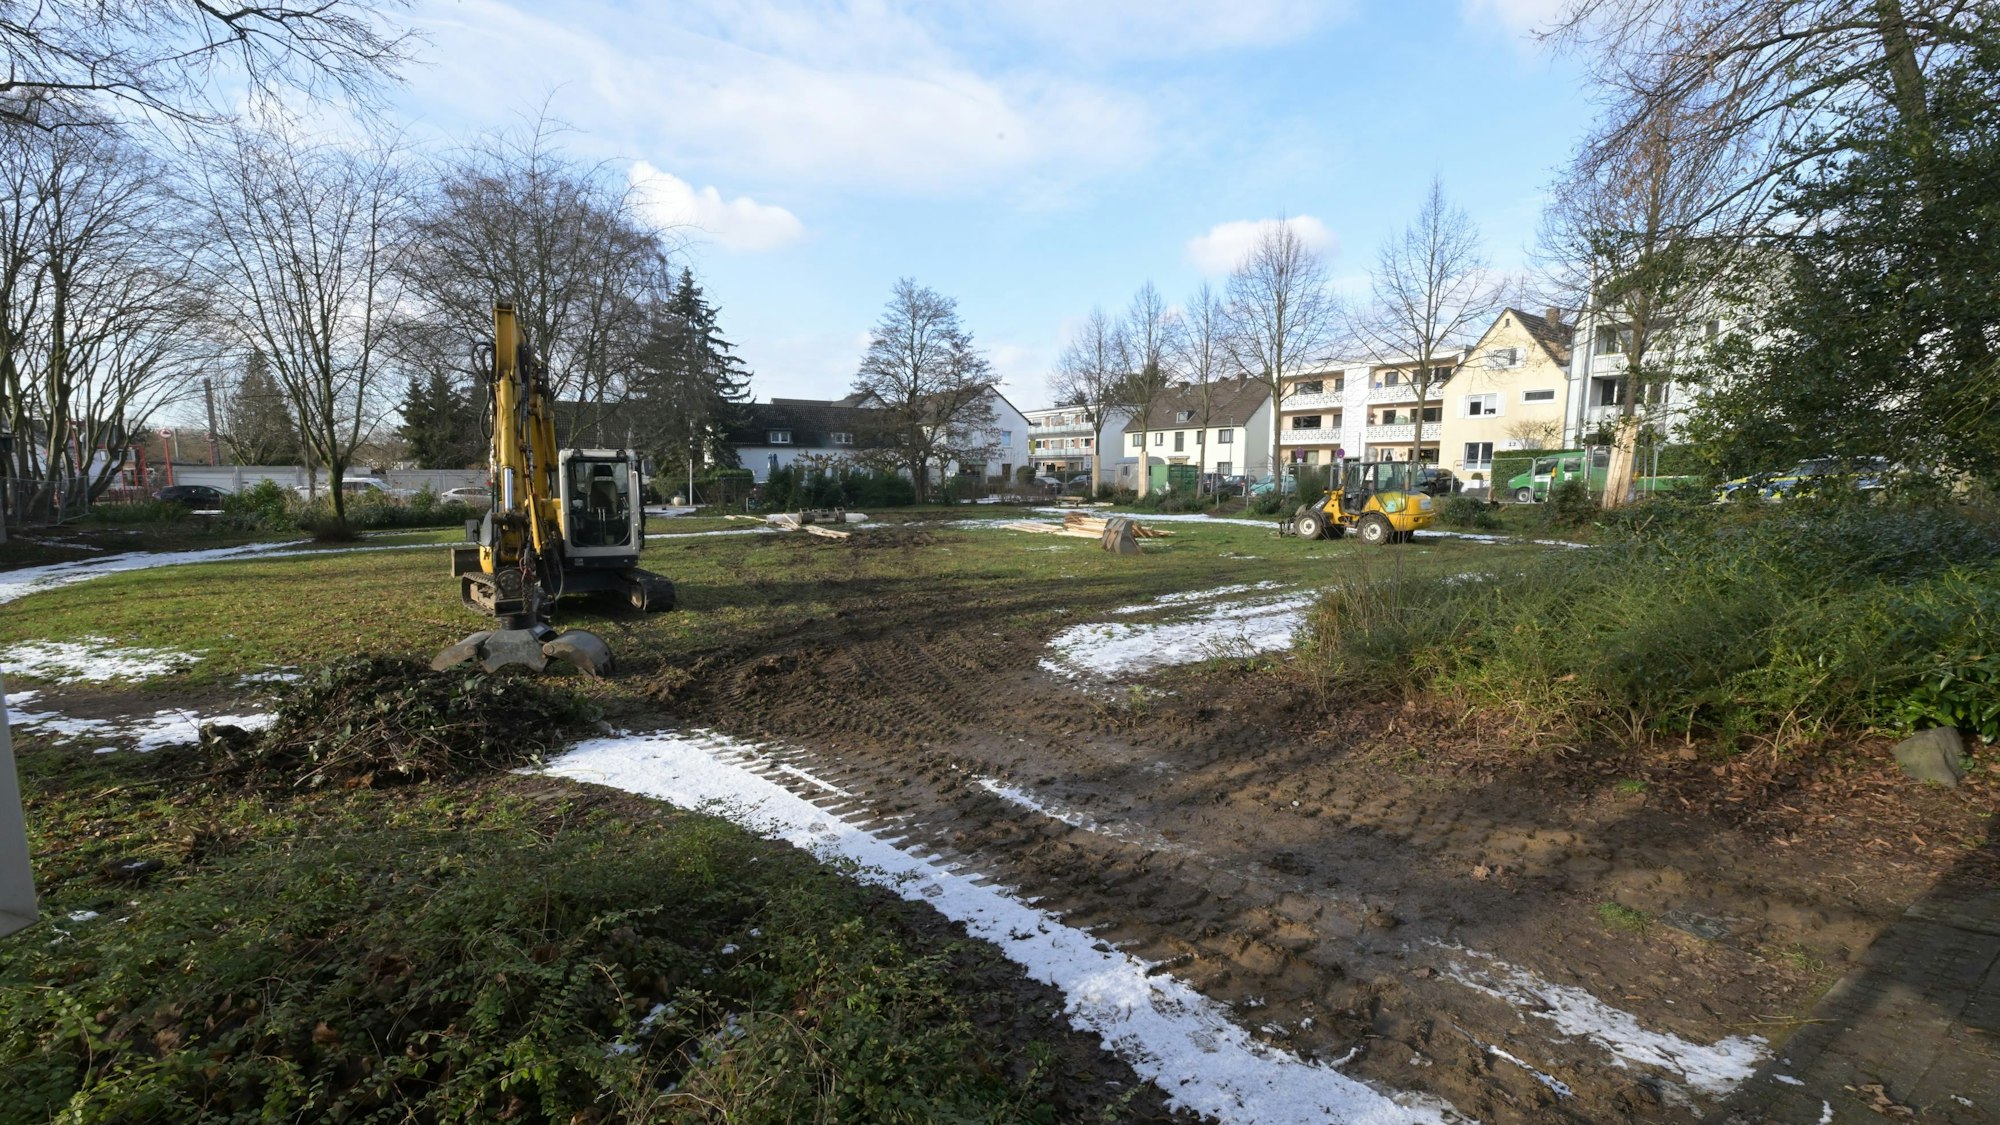 Baubeginn Mehrgenerationenpark Refrath Wilhelm Klein Strasse

